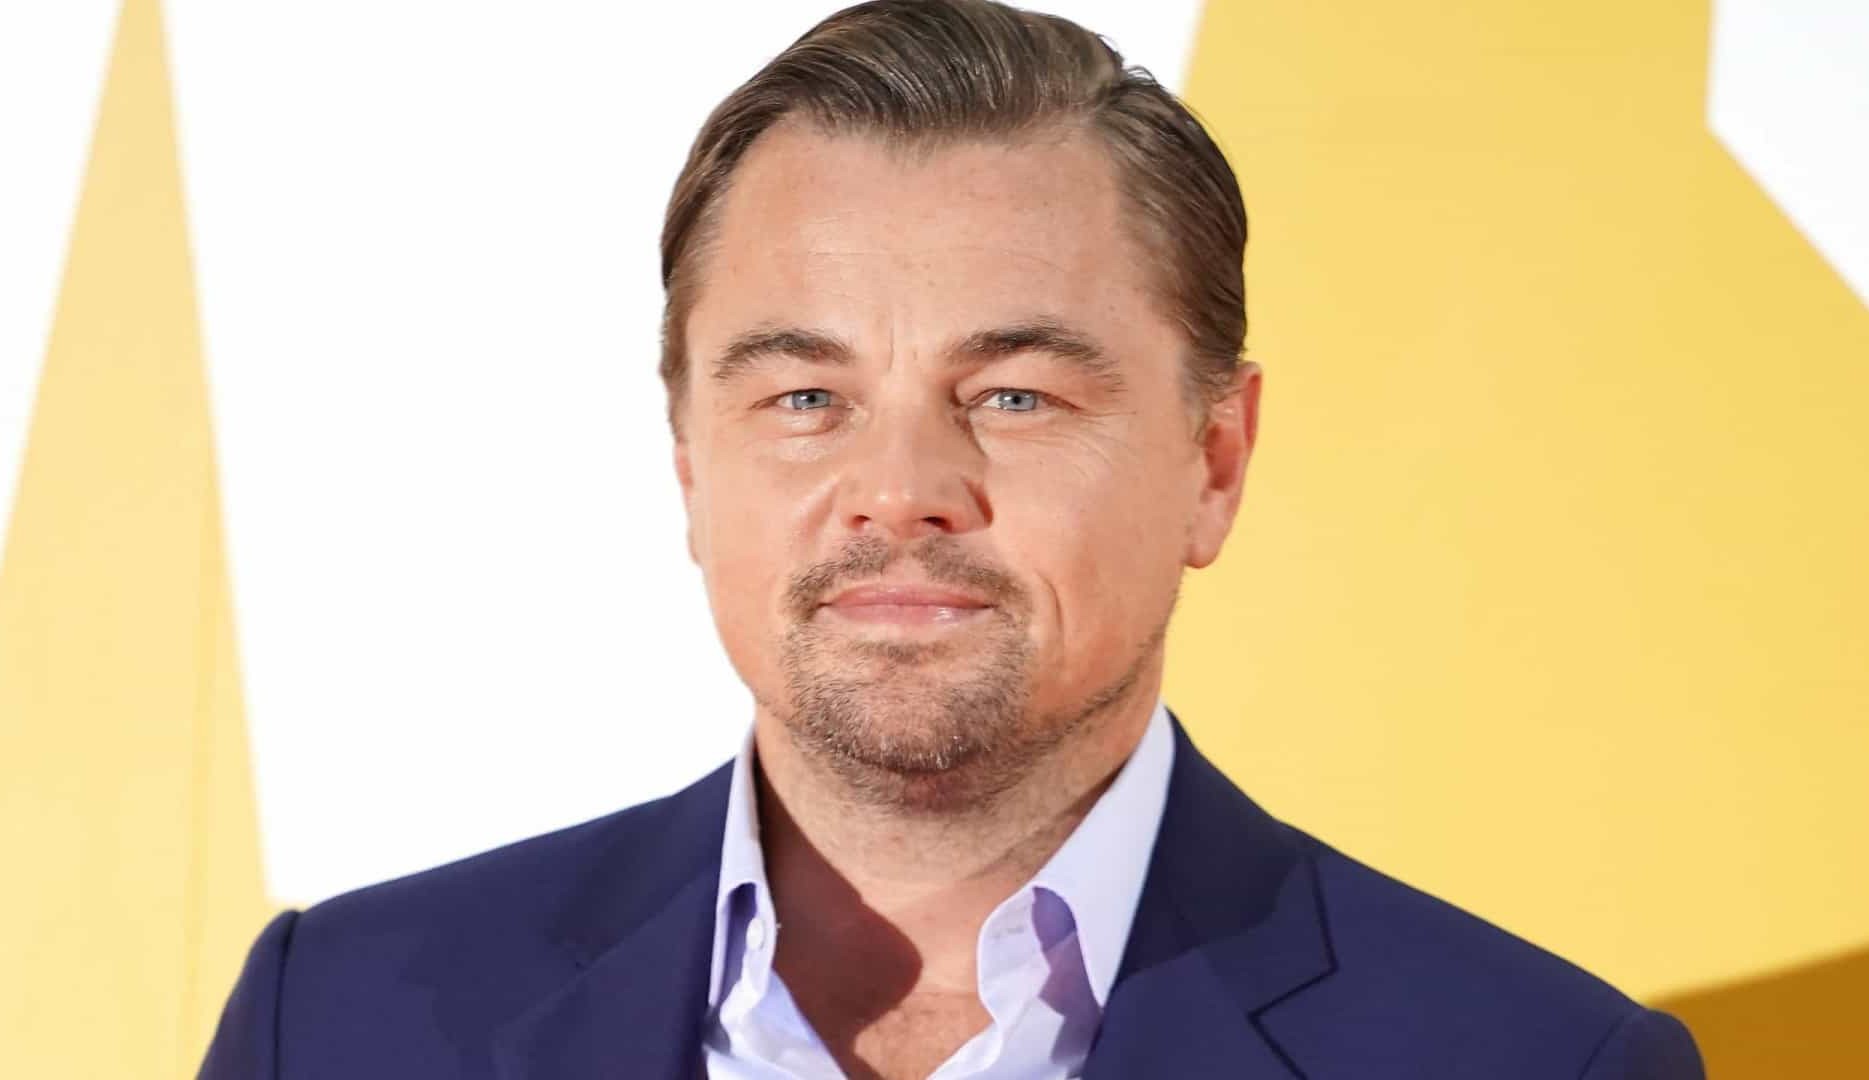 Leonardo DiCaprio estaria irritado com comentários sobre sua vida amorosa